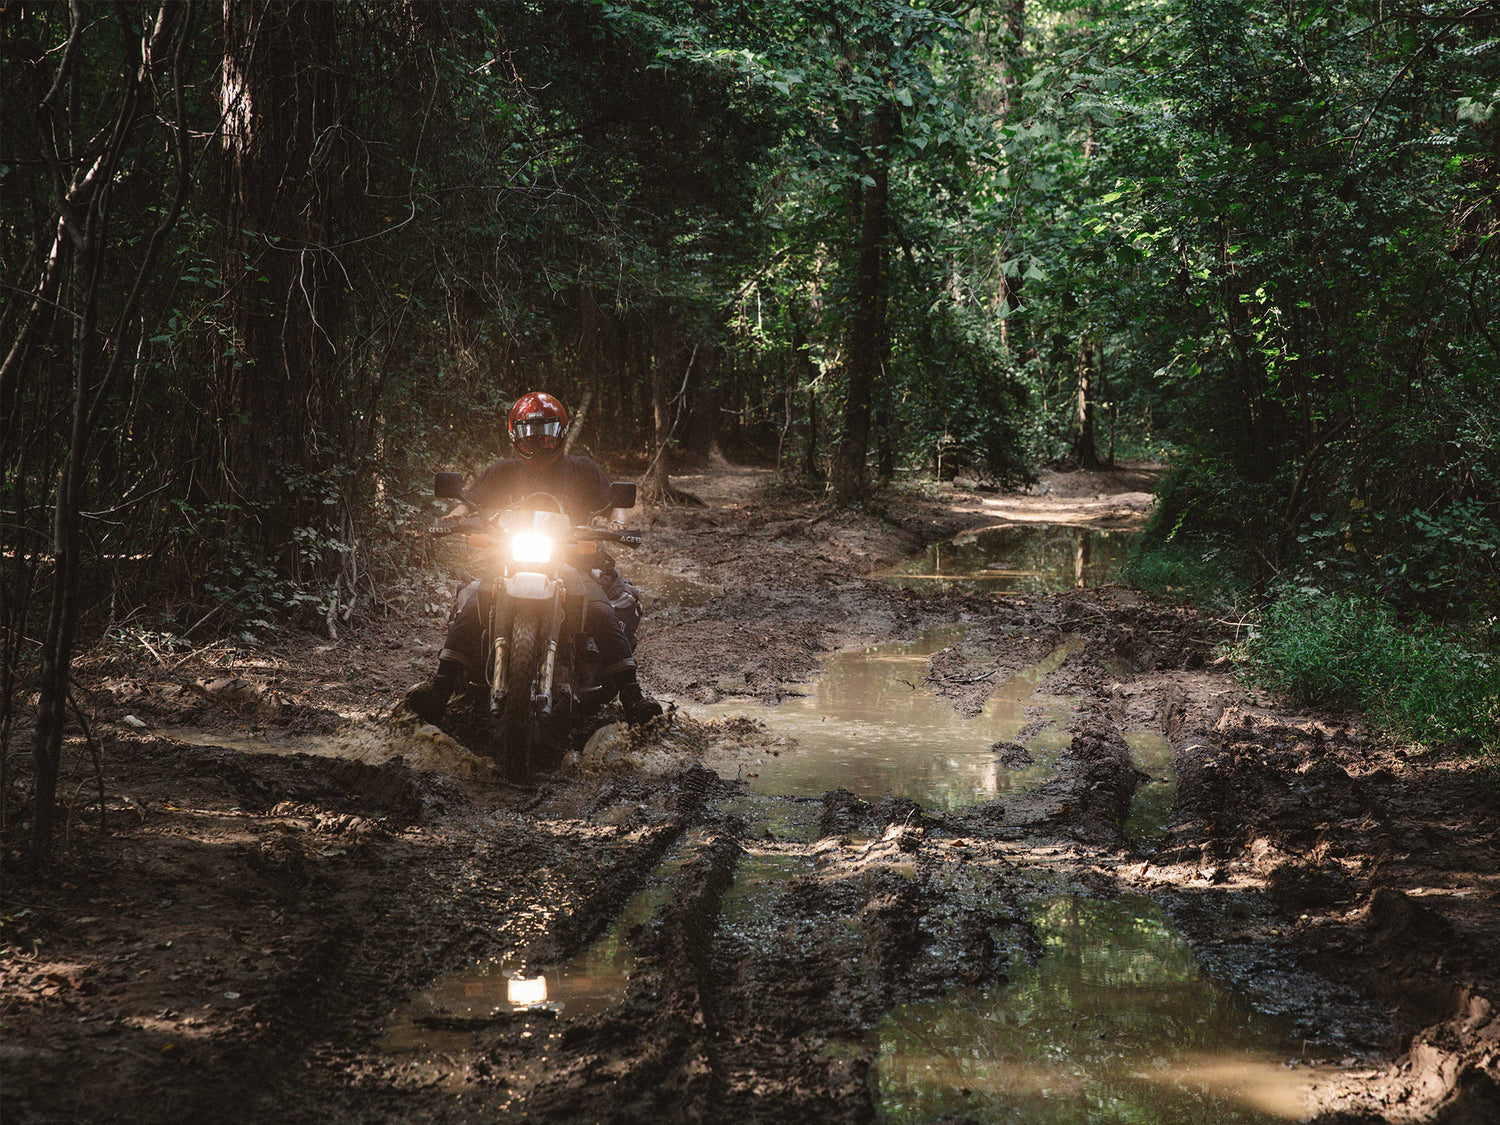 motorcycle driving through mud